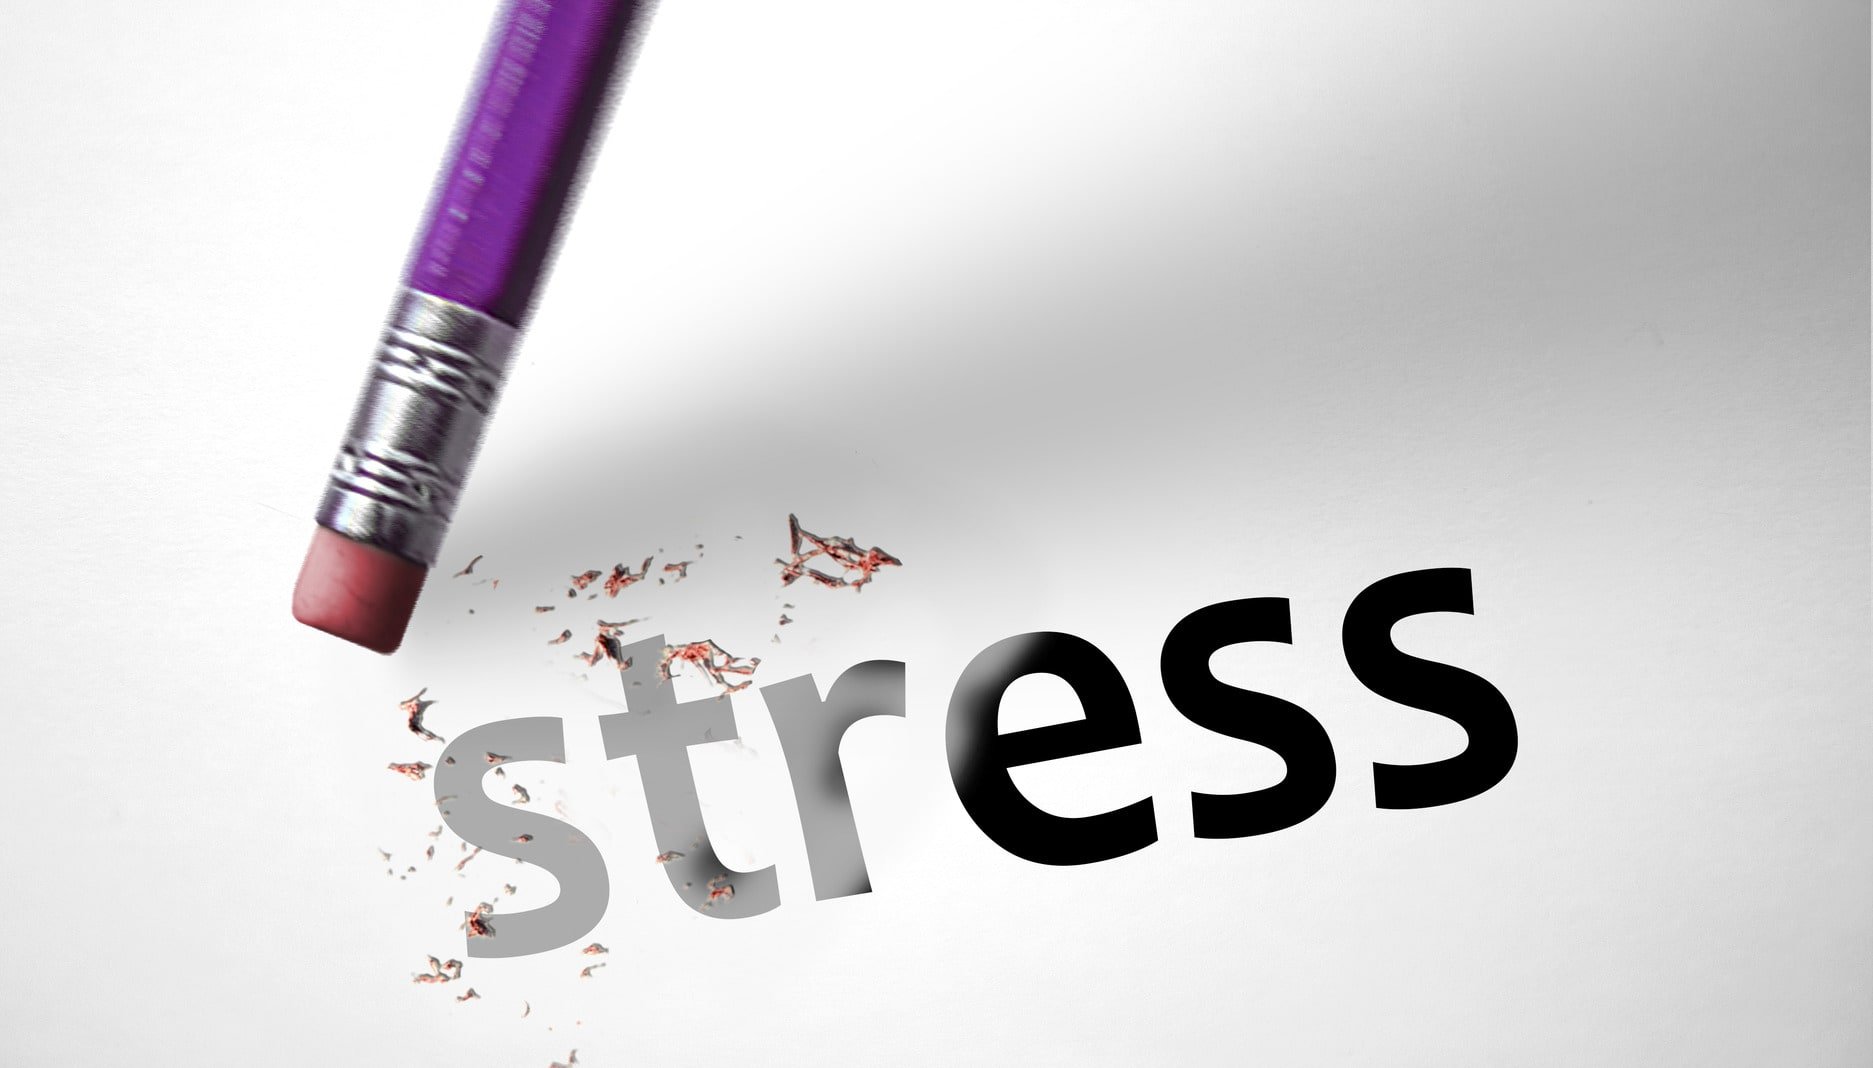 Картинка со словом стресс